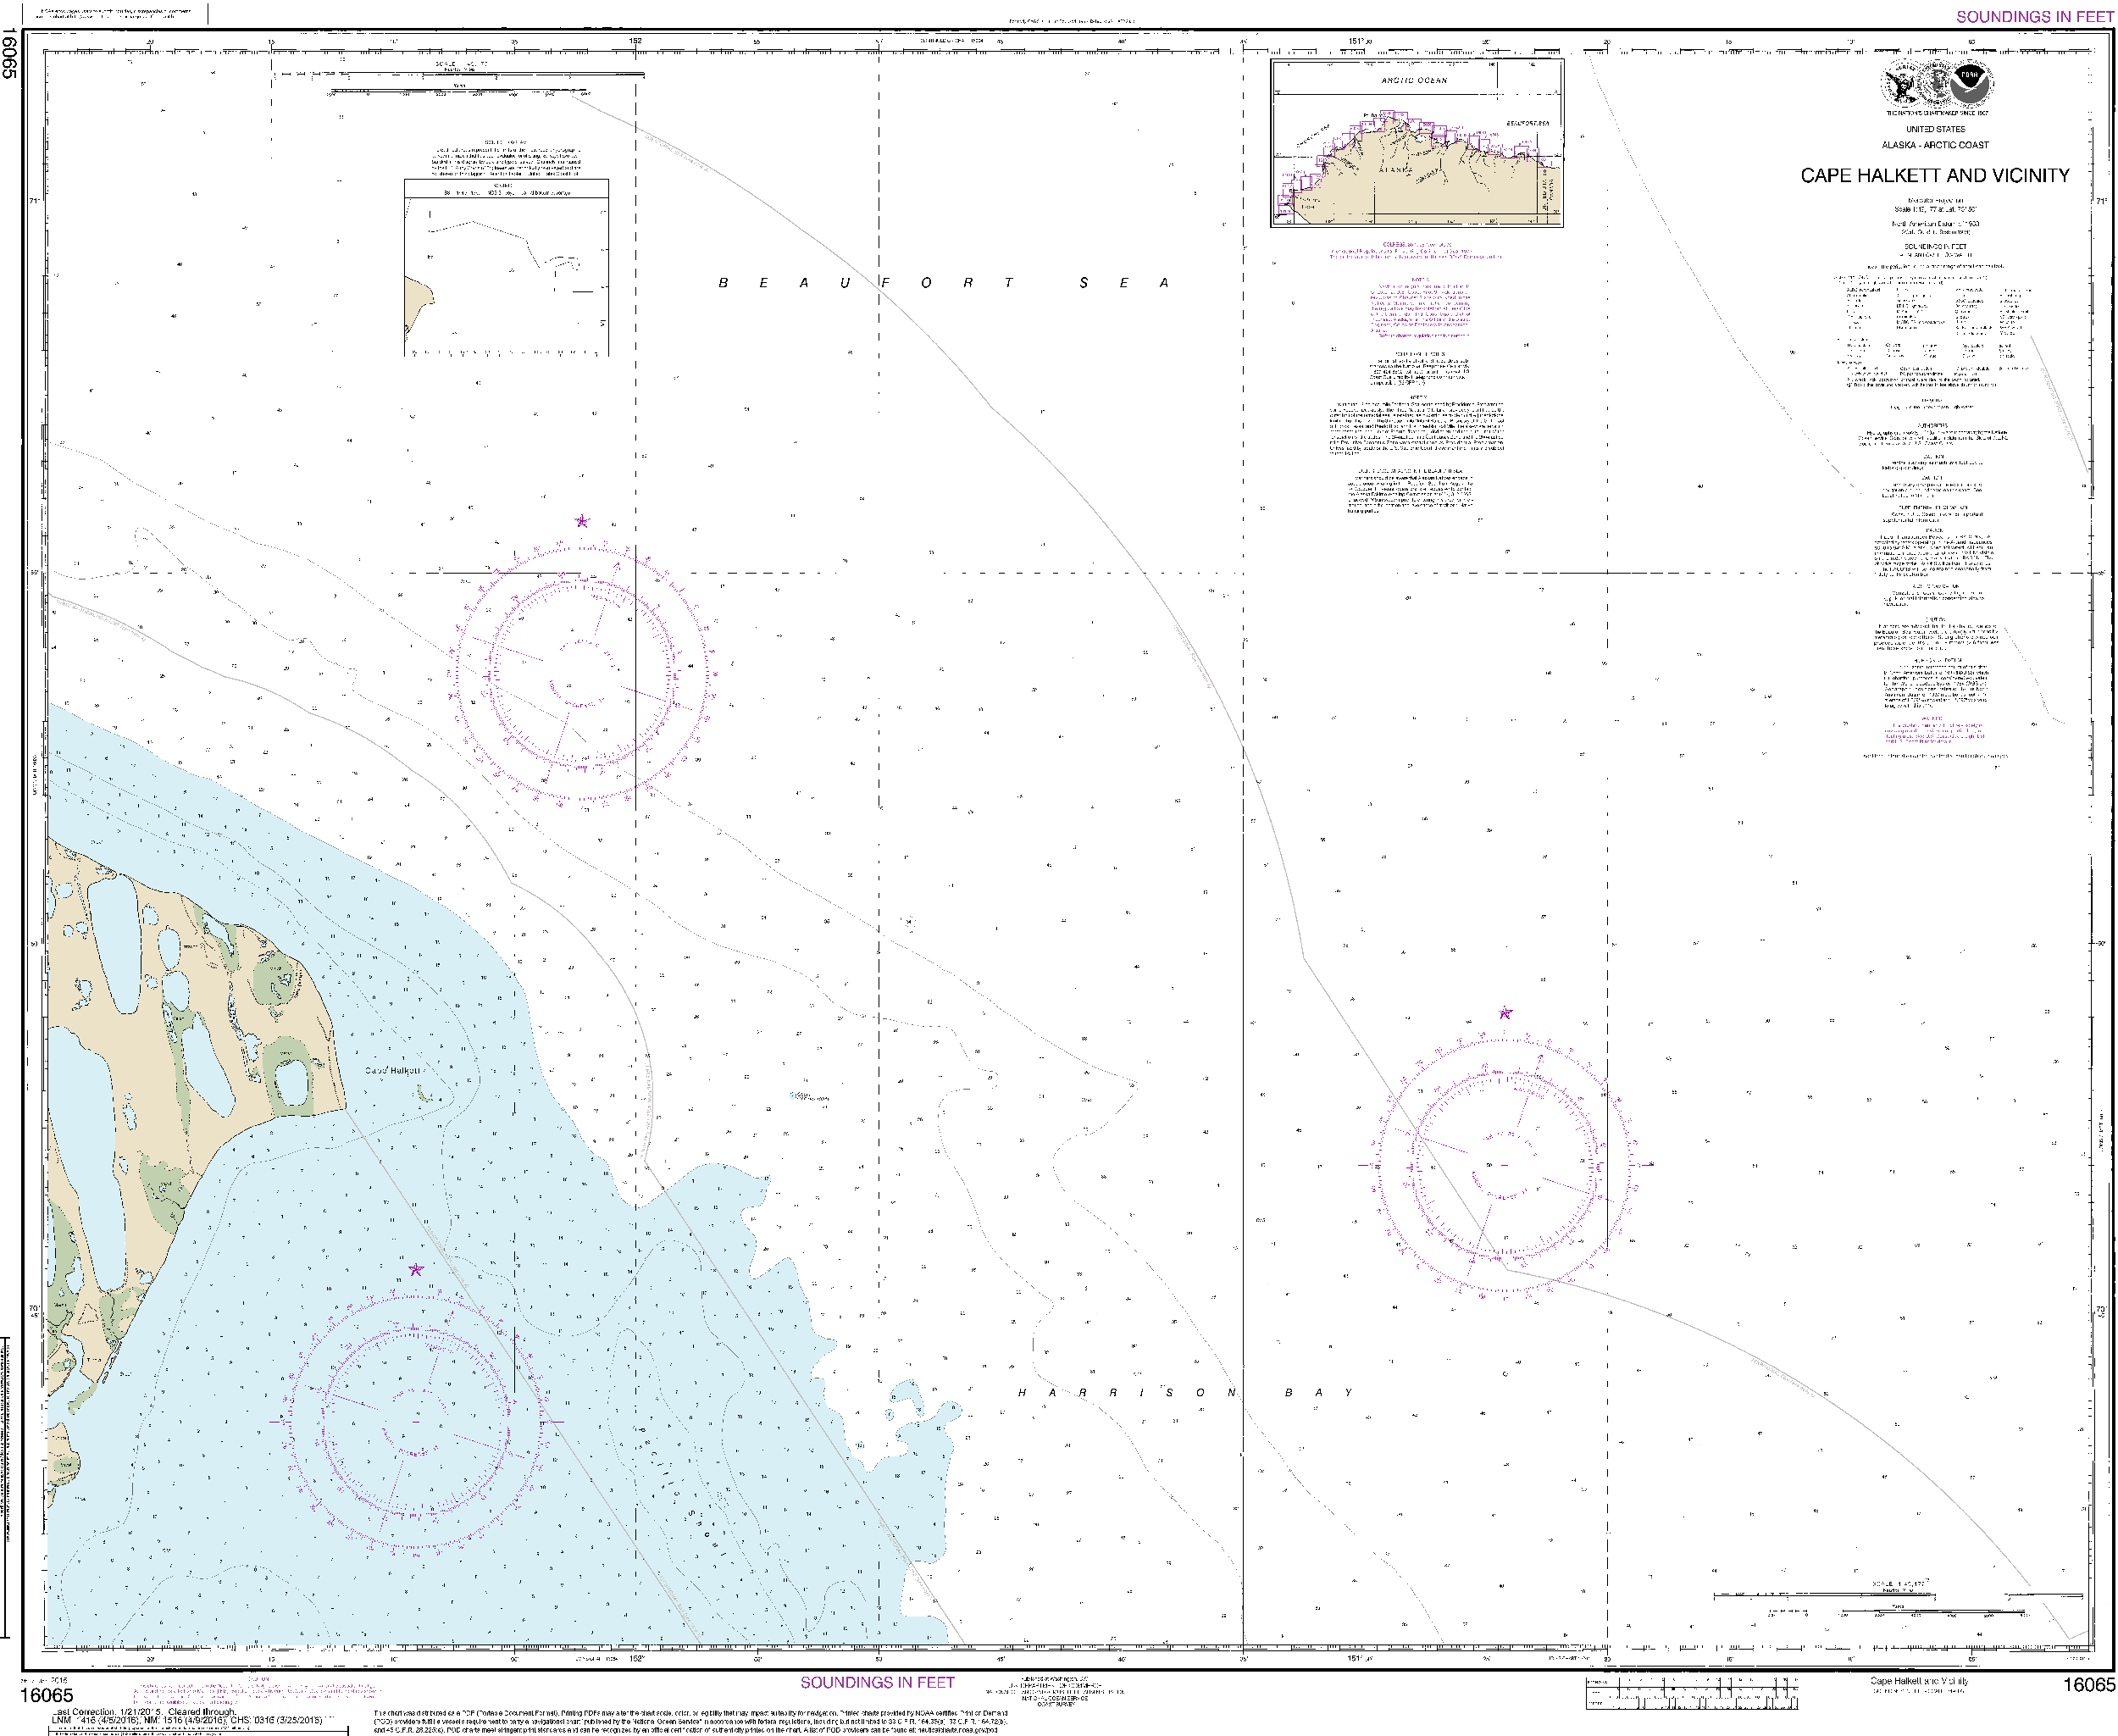 NOAA Nautical Chart 16065: Cape Halkett and vicinity